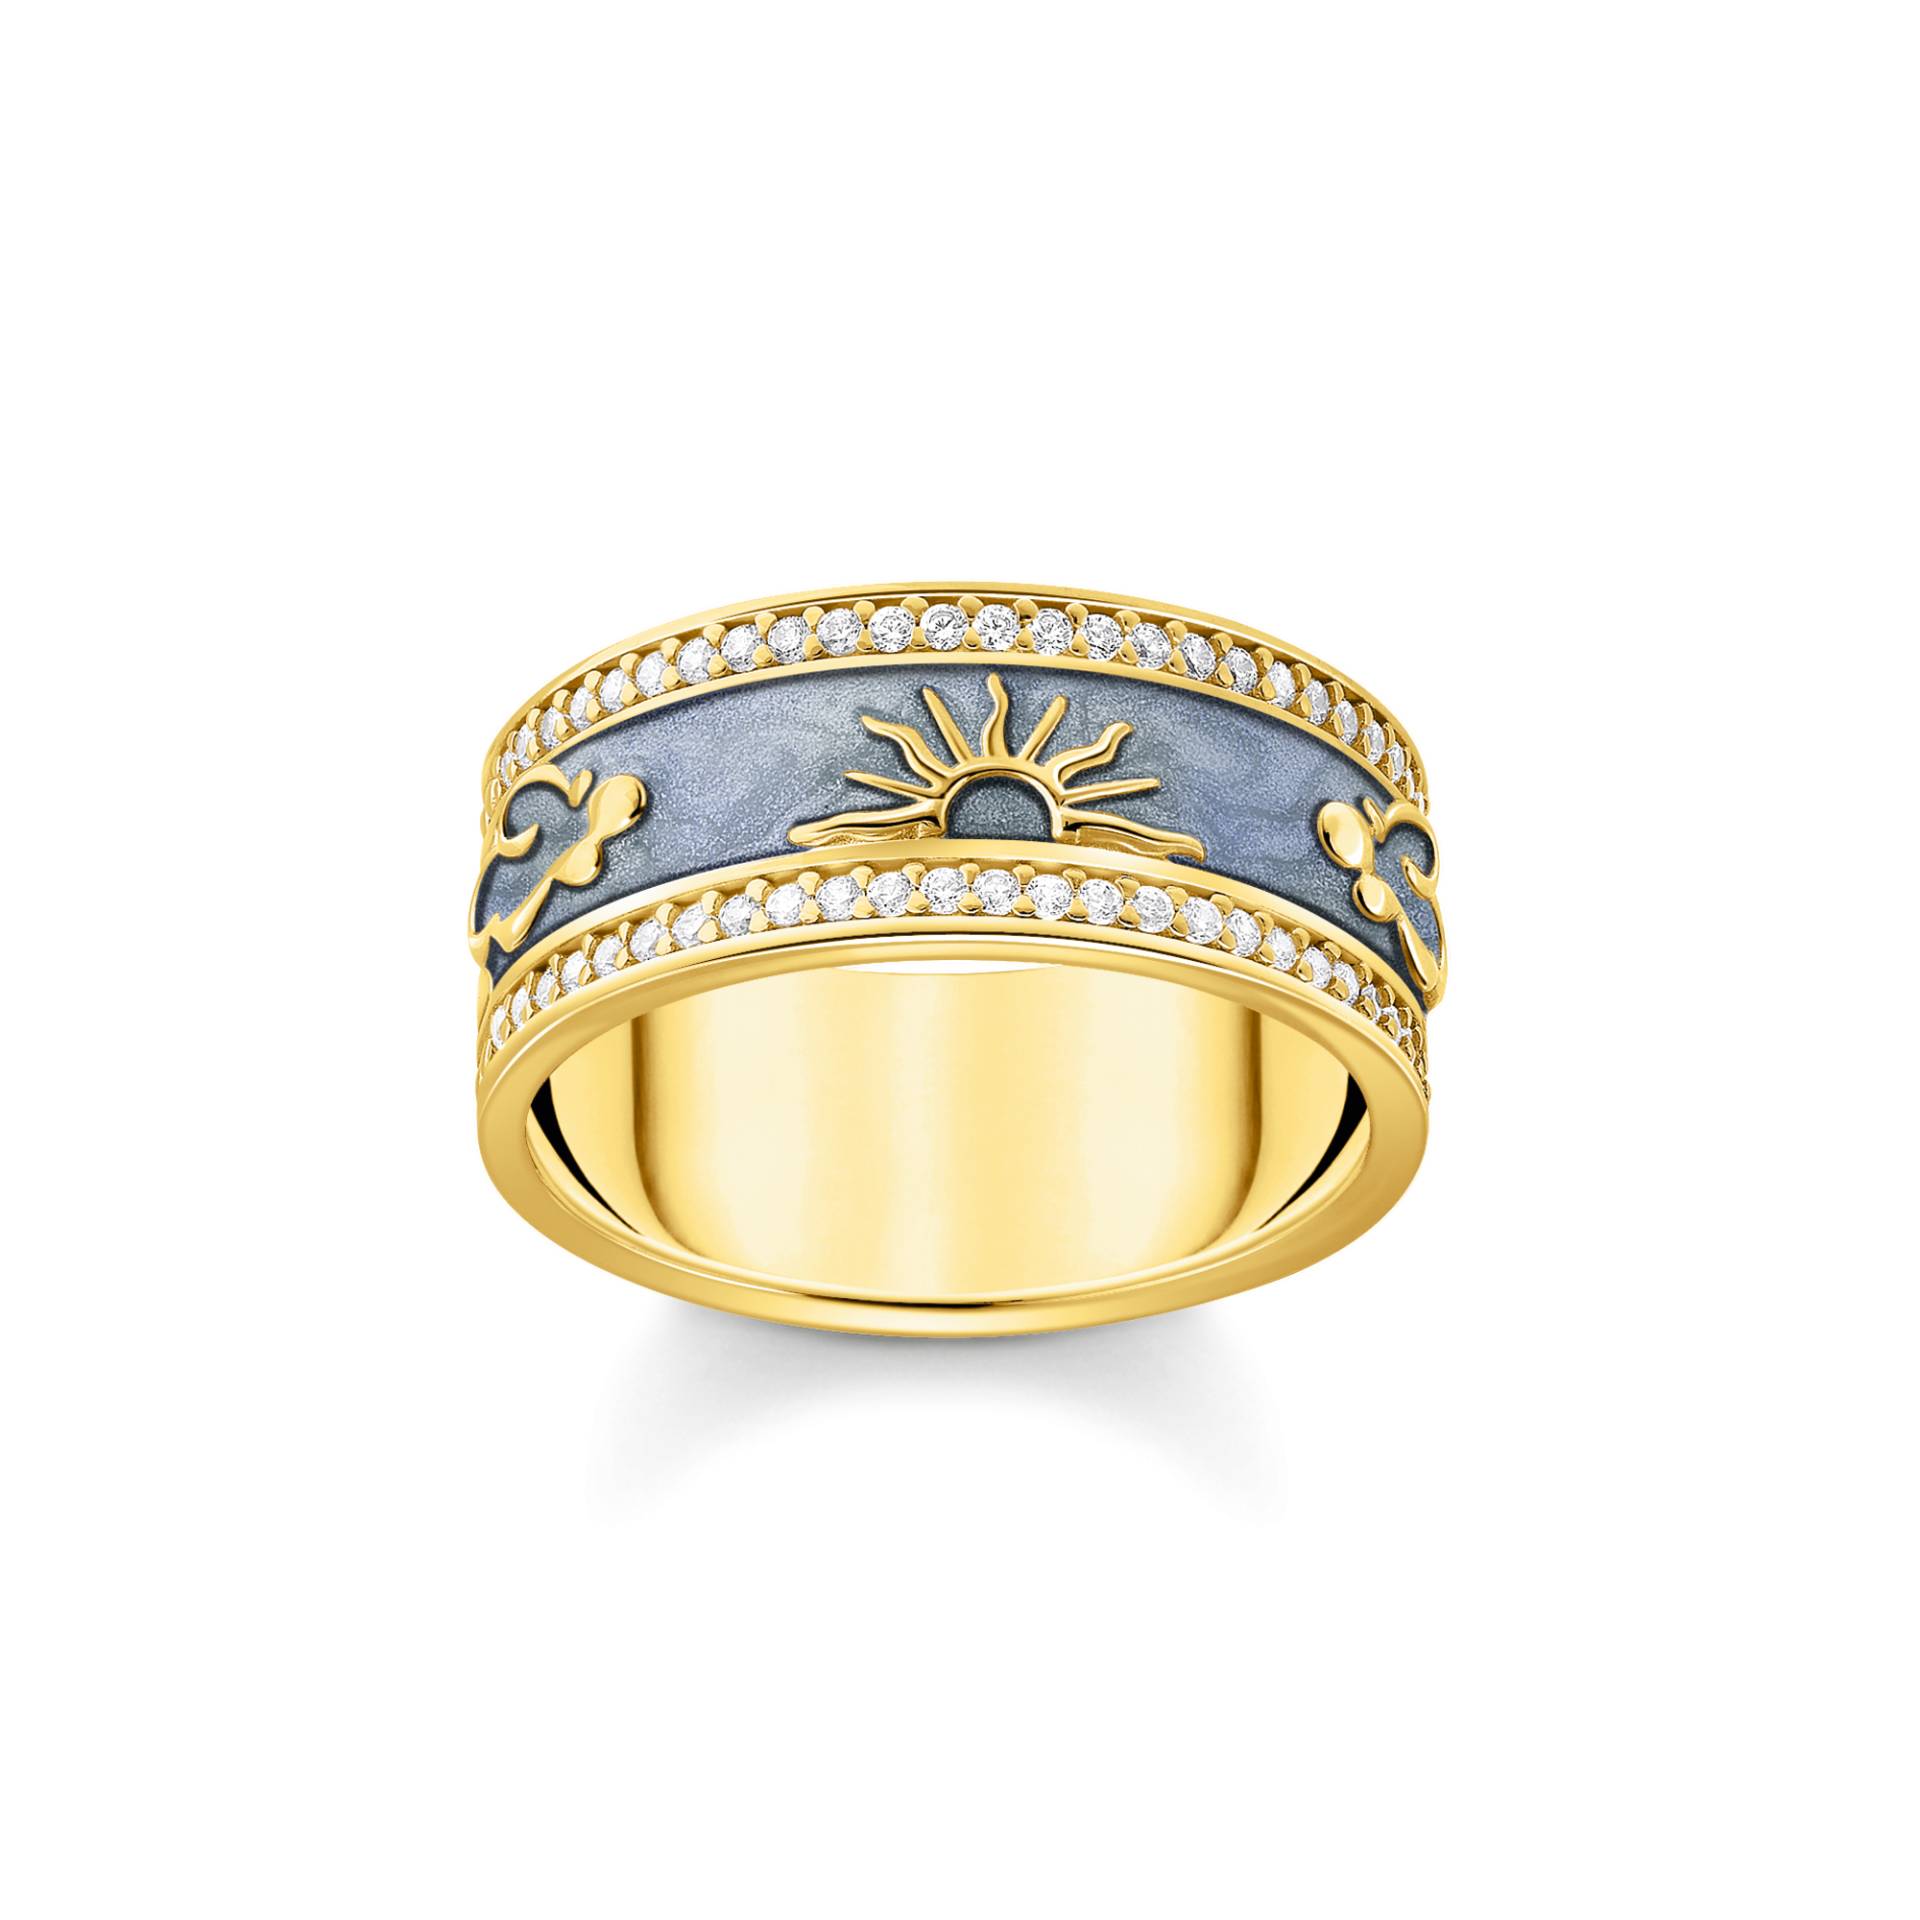 Thomas Sabo Ring blau mit kosmischen Symbolen vergoldet blau TR2450-565-1-56 von Thomas Sabo